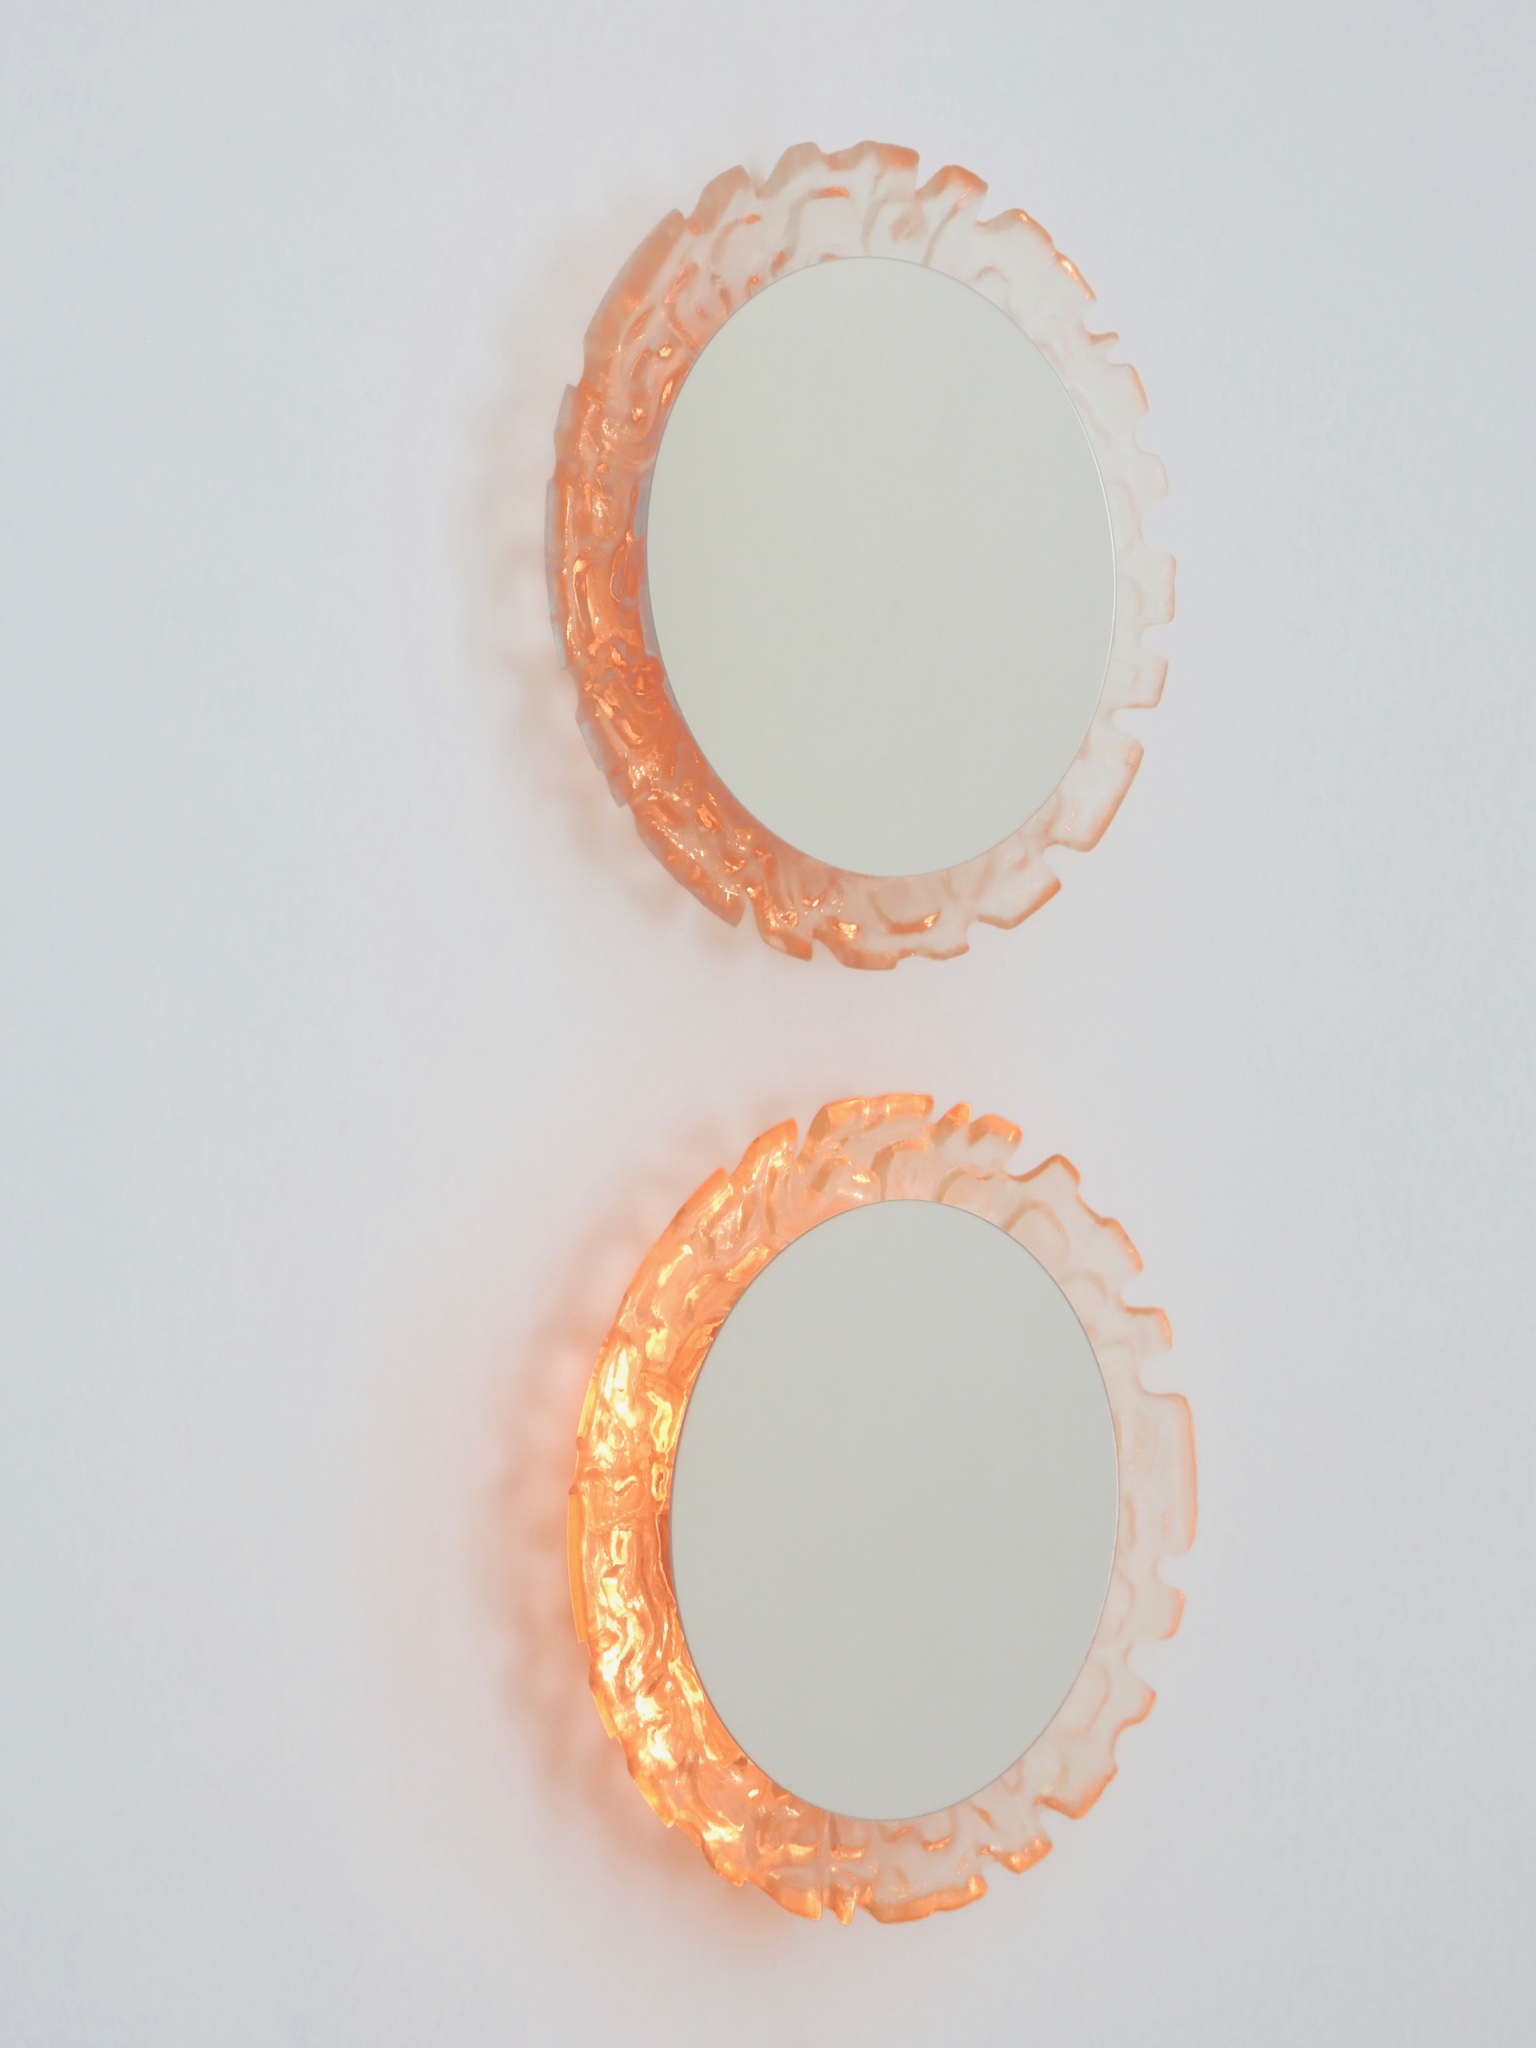 Sold - Illuminated Lucite Mirror Pair